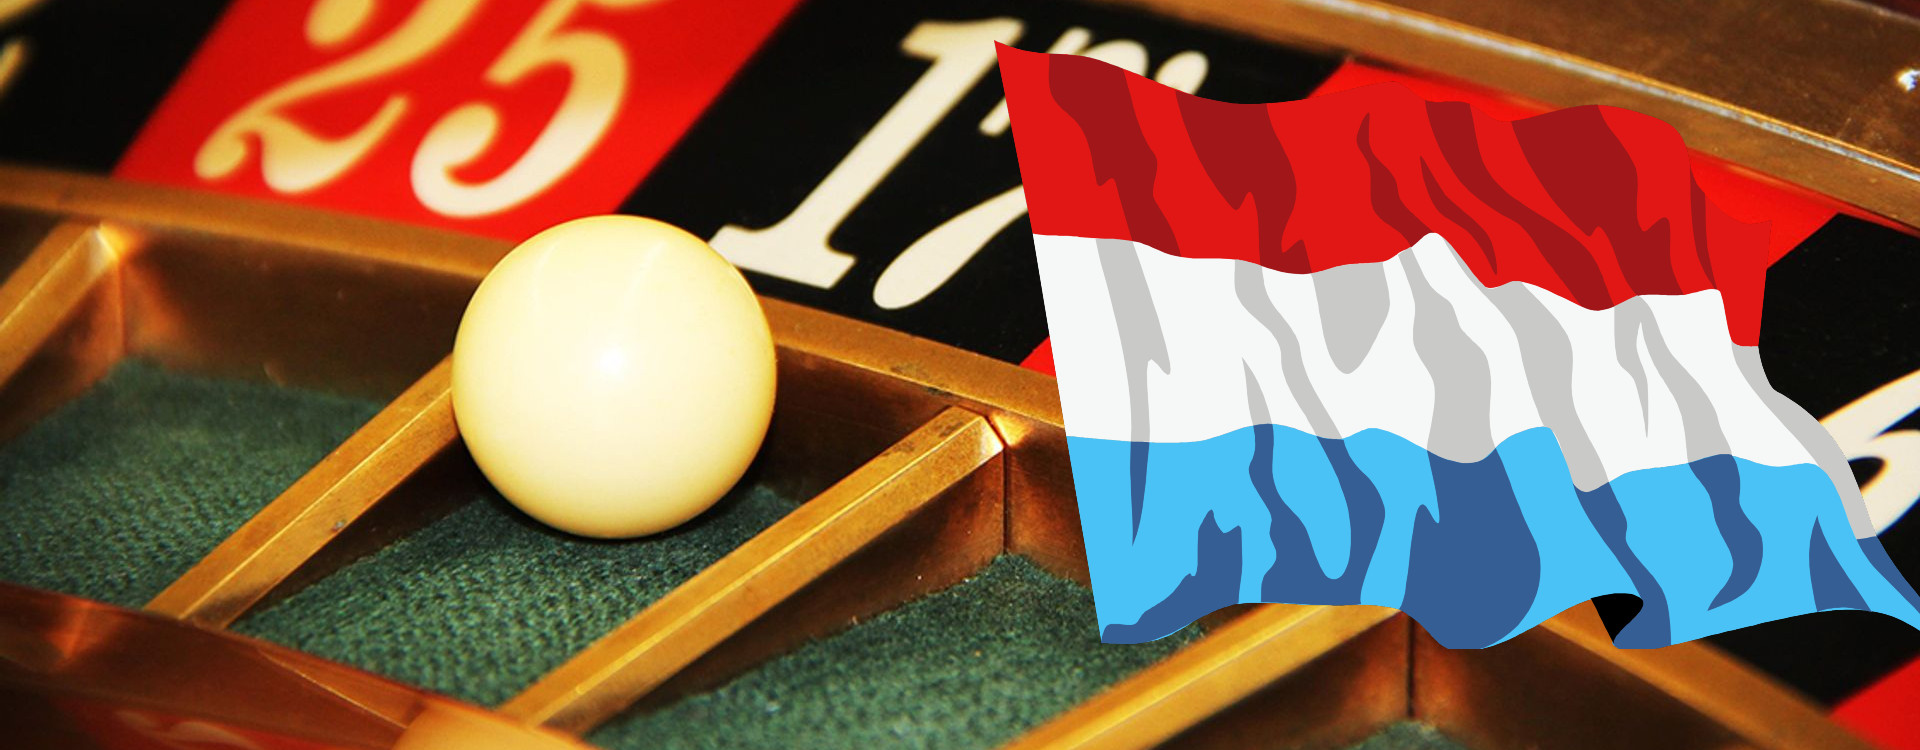 De voordelen en nadelen van de nieuwe wet Koa voor gokken in Nederland